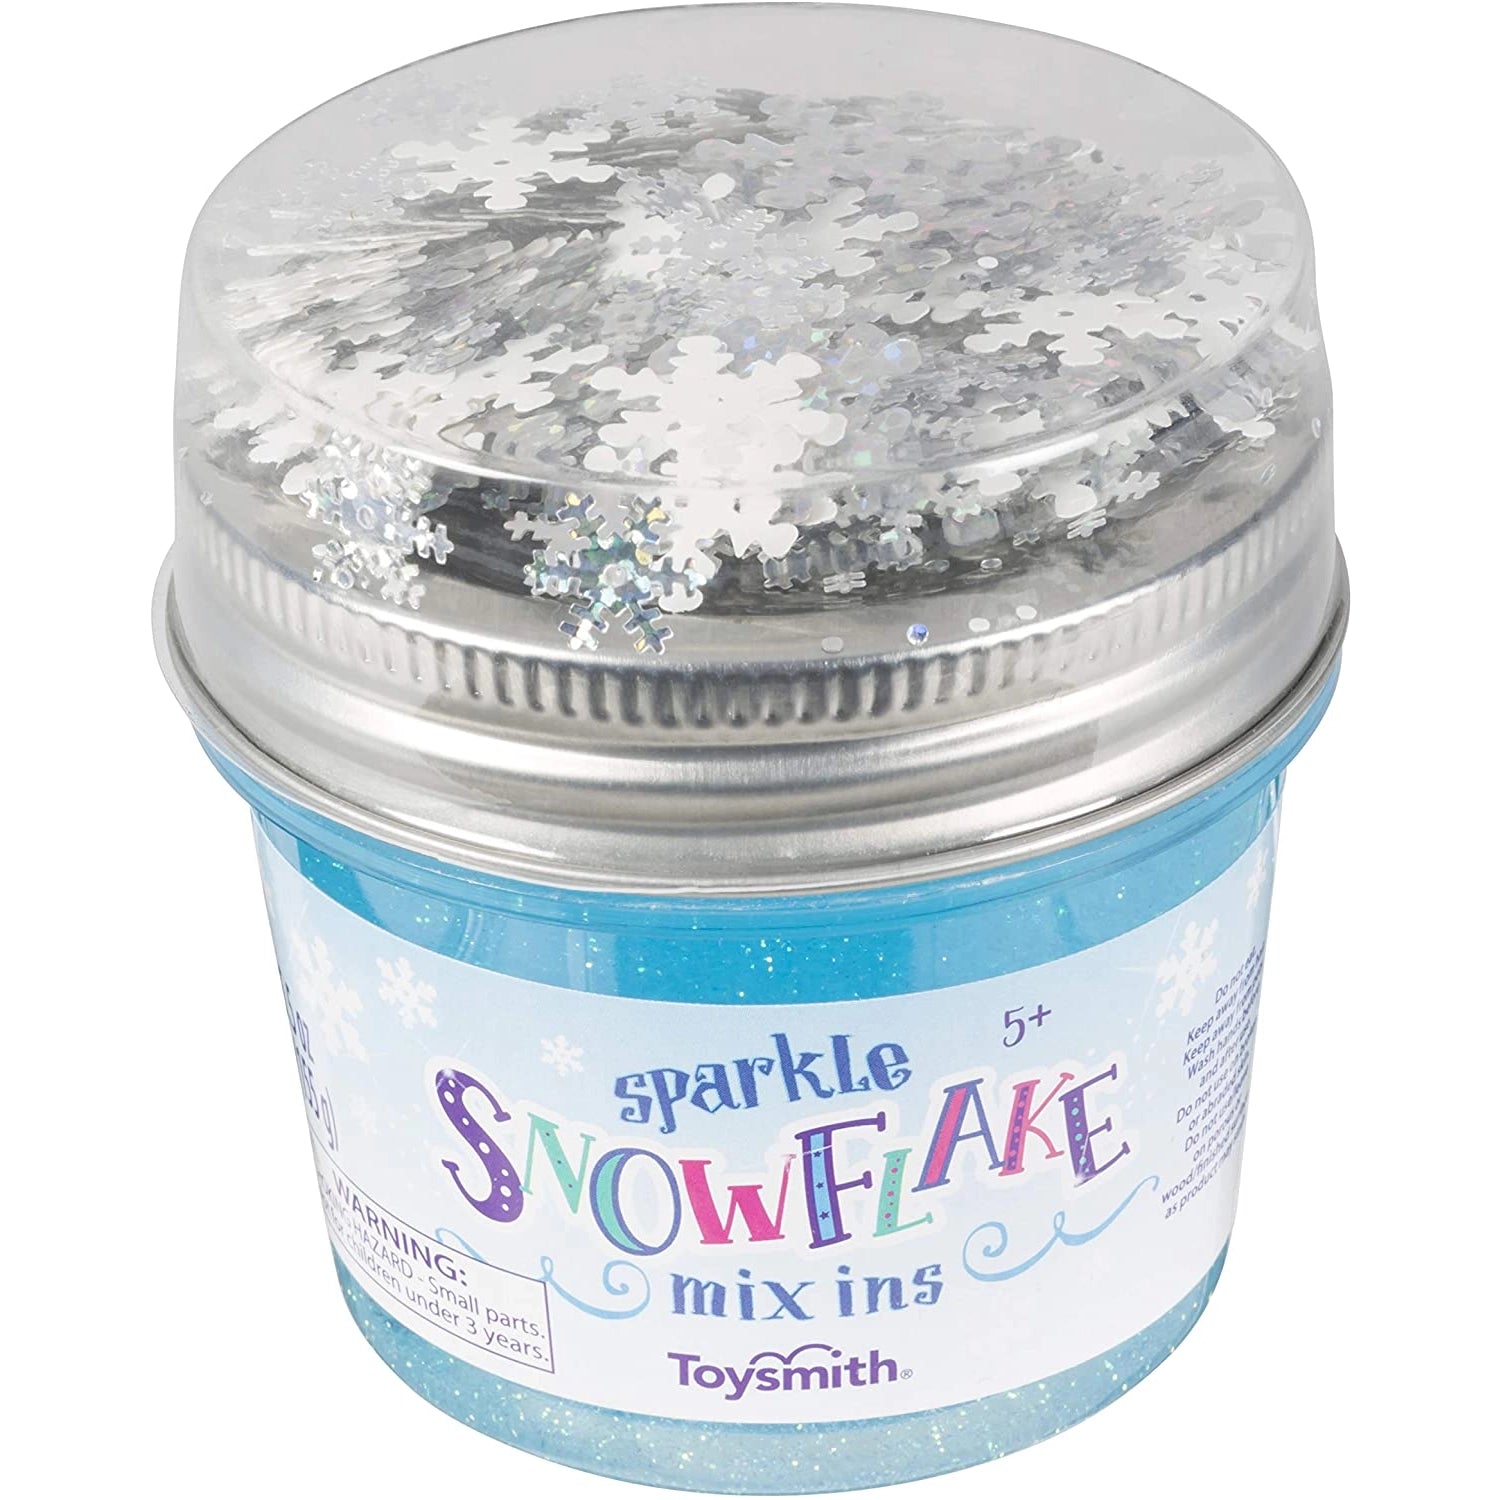 Sparkle Snowflake Mix ins Slime Toy Smith